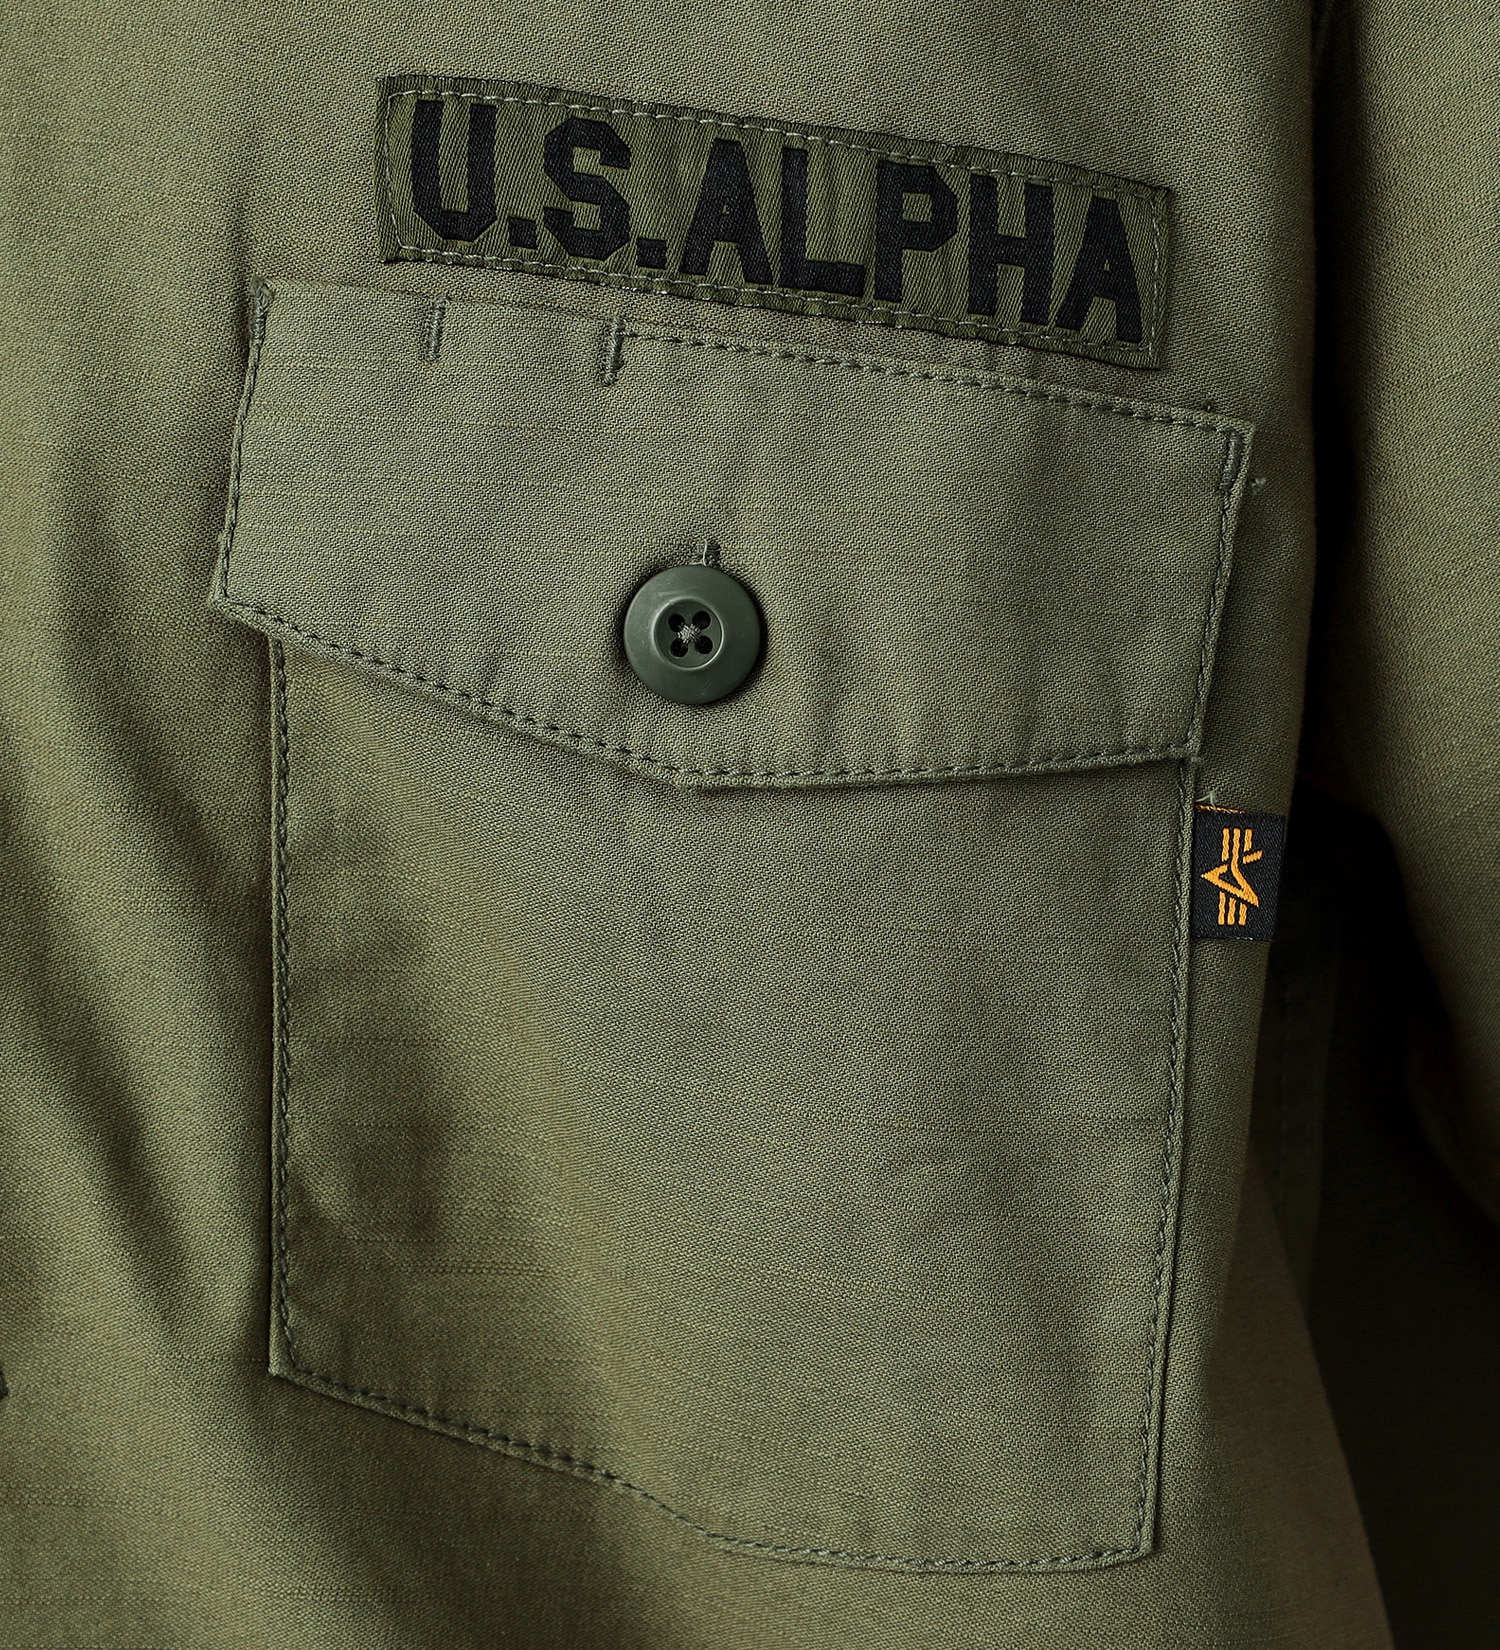 ALPHA(アルファ)の【試着対象】スーベニアバック刺繍 半袖ミリタリーシャツ|トップス/シャツ/ブラウス/メンズ|アーミー